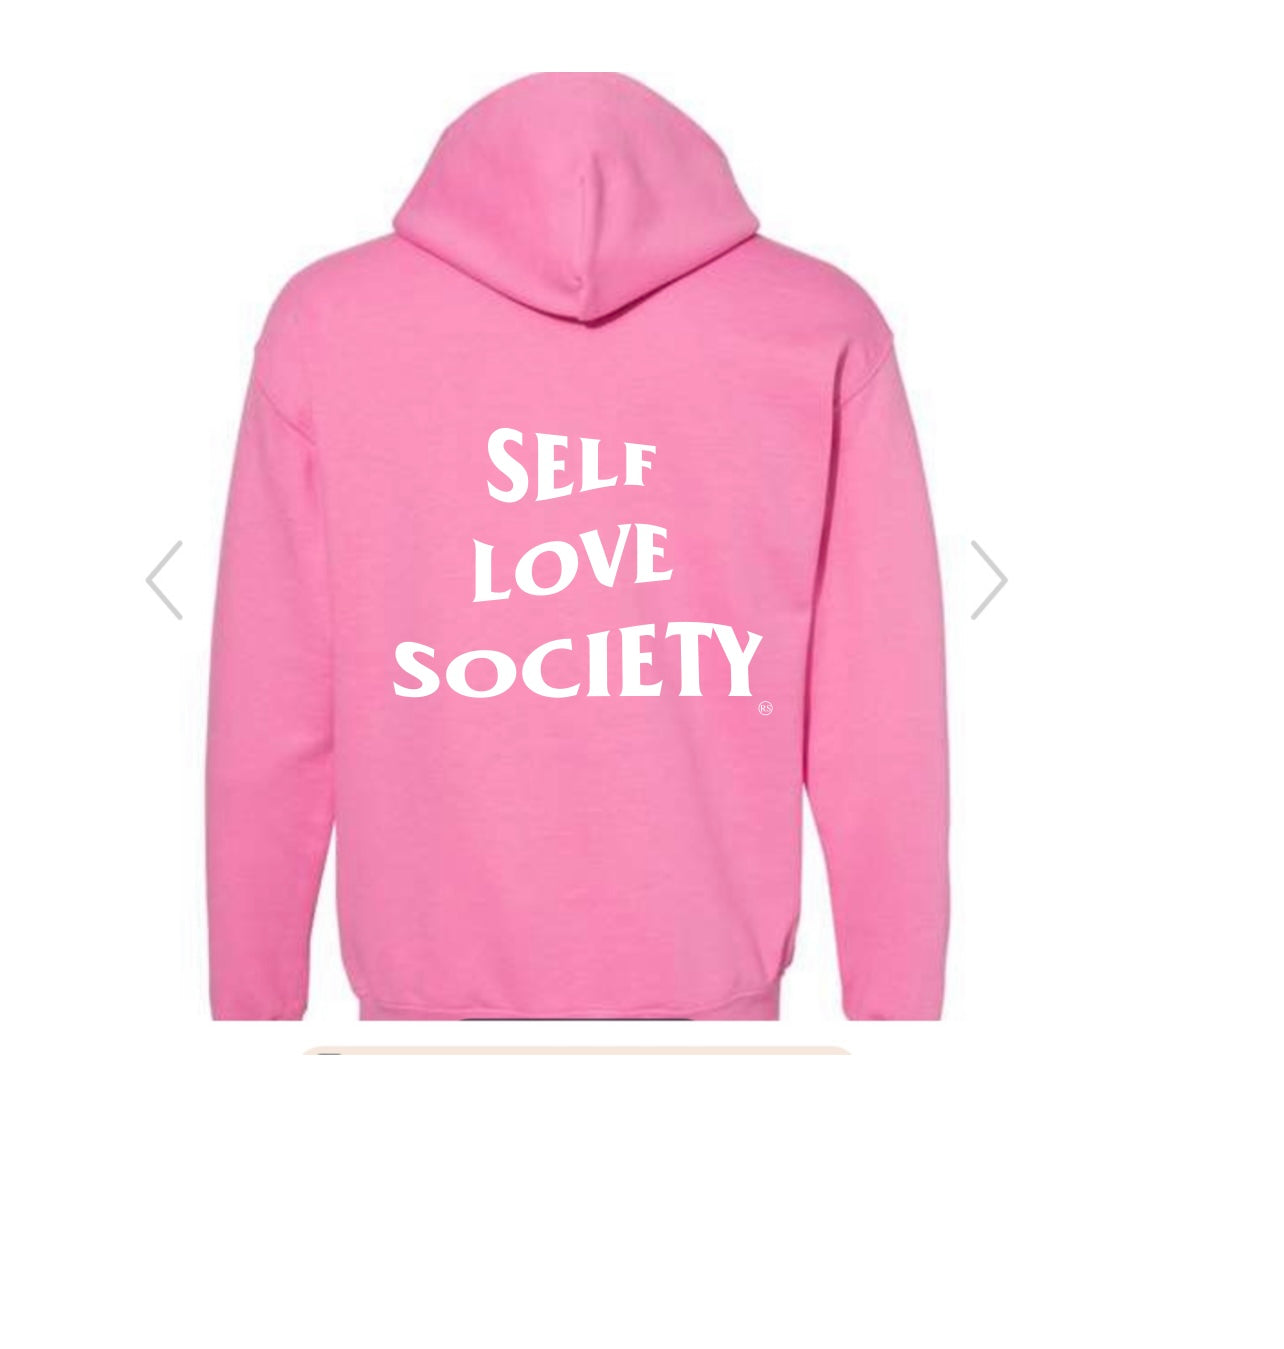 Self love design on Pink Hoodie/Crewneck